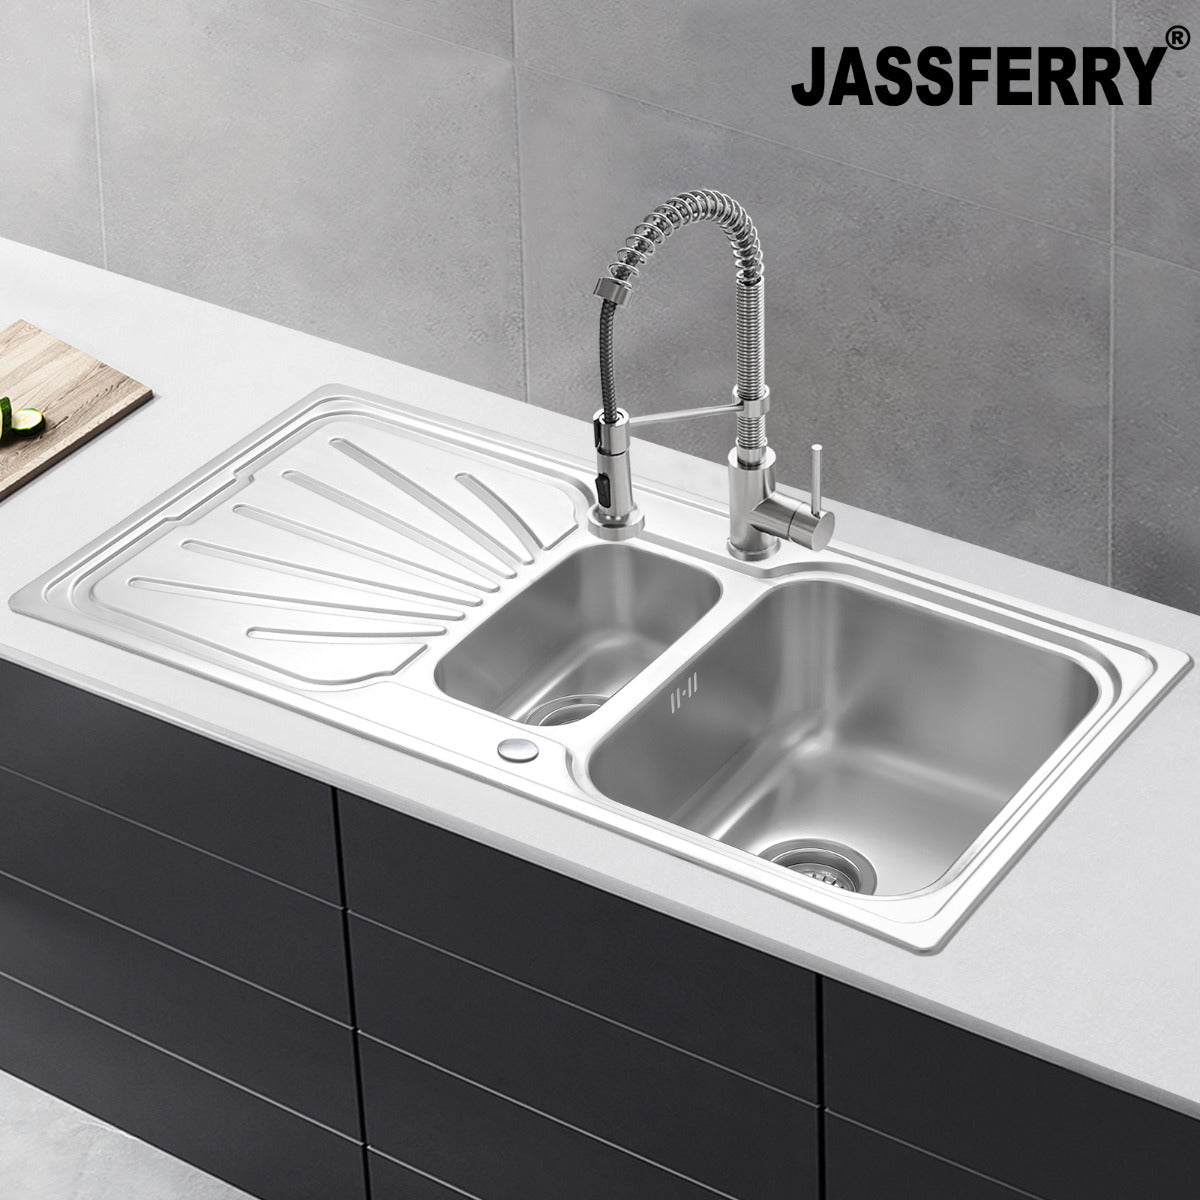 JassferryJASSFERRY Stainless Steel Kitchen Sink Inset One Half Bowl Reversible Drainer - 851BKitchen Sinks